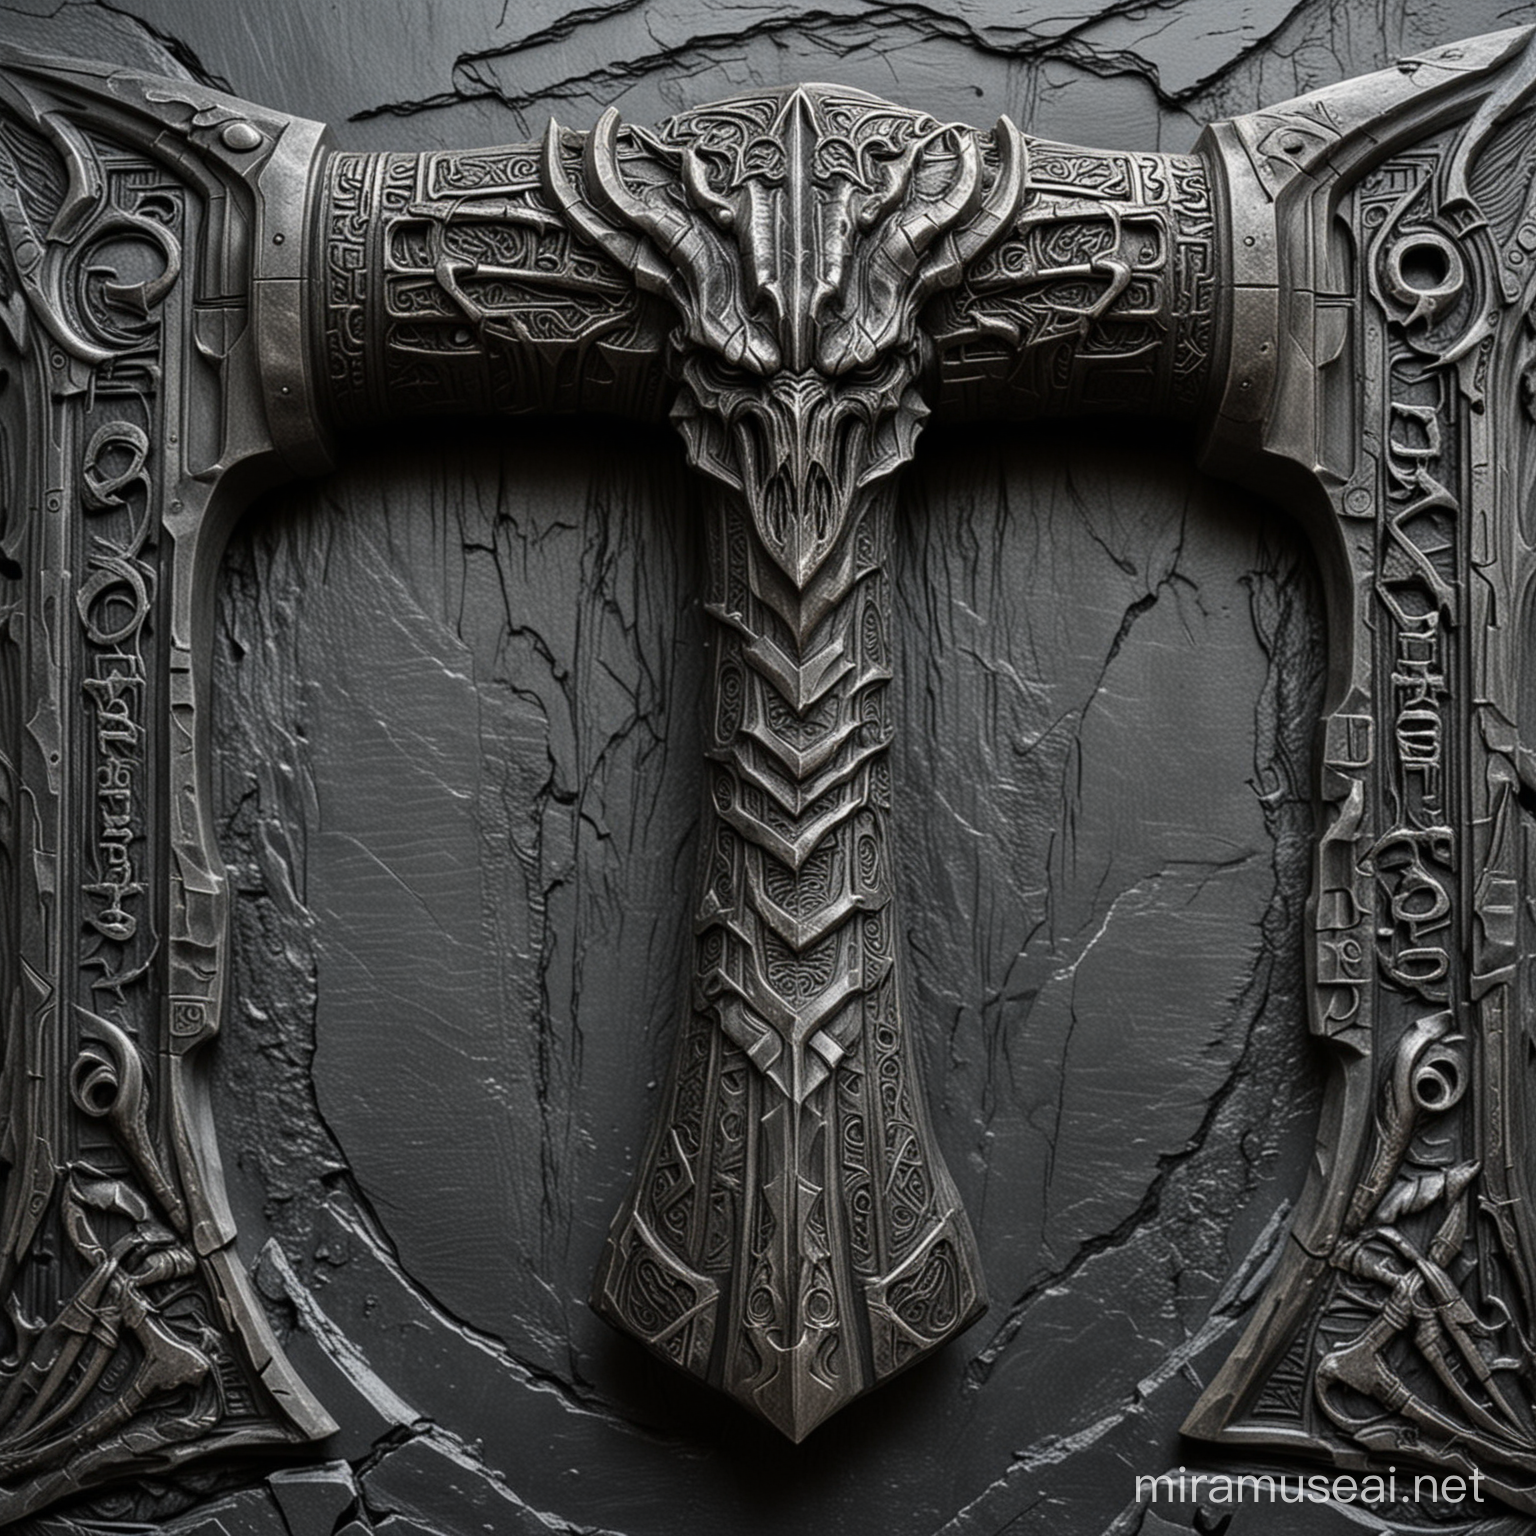 Mjölnir Thor hammer of Damascus steel, deeply carved with H. R. Giger dragon Klingon designs. slate background